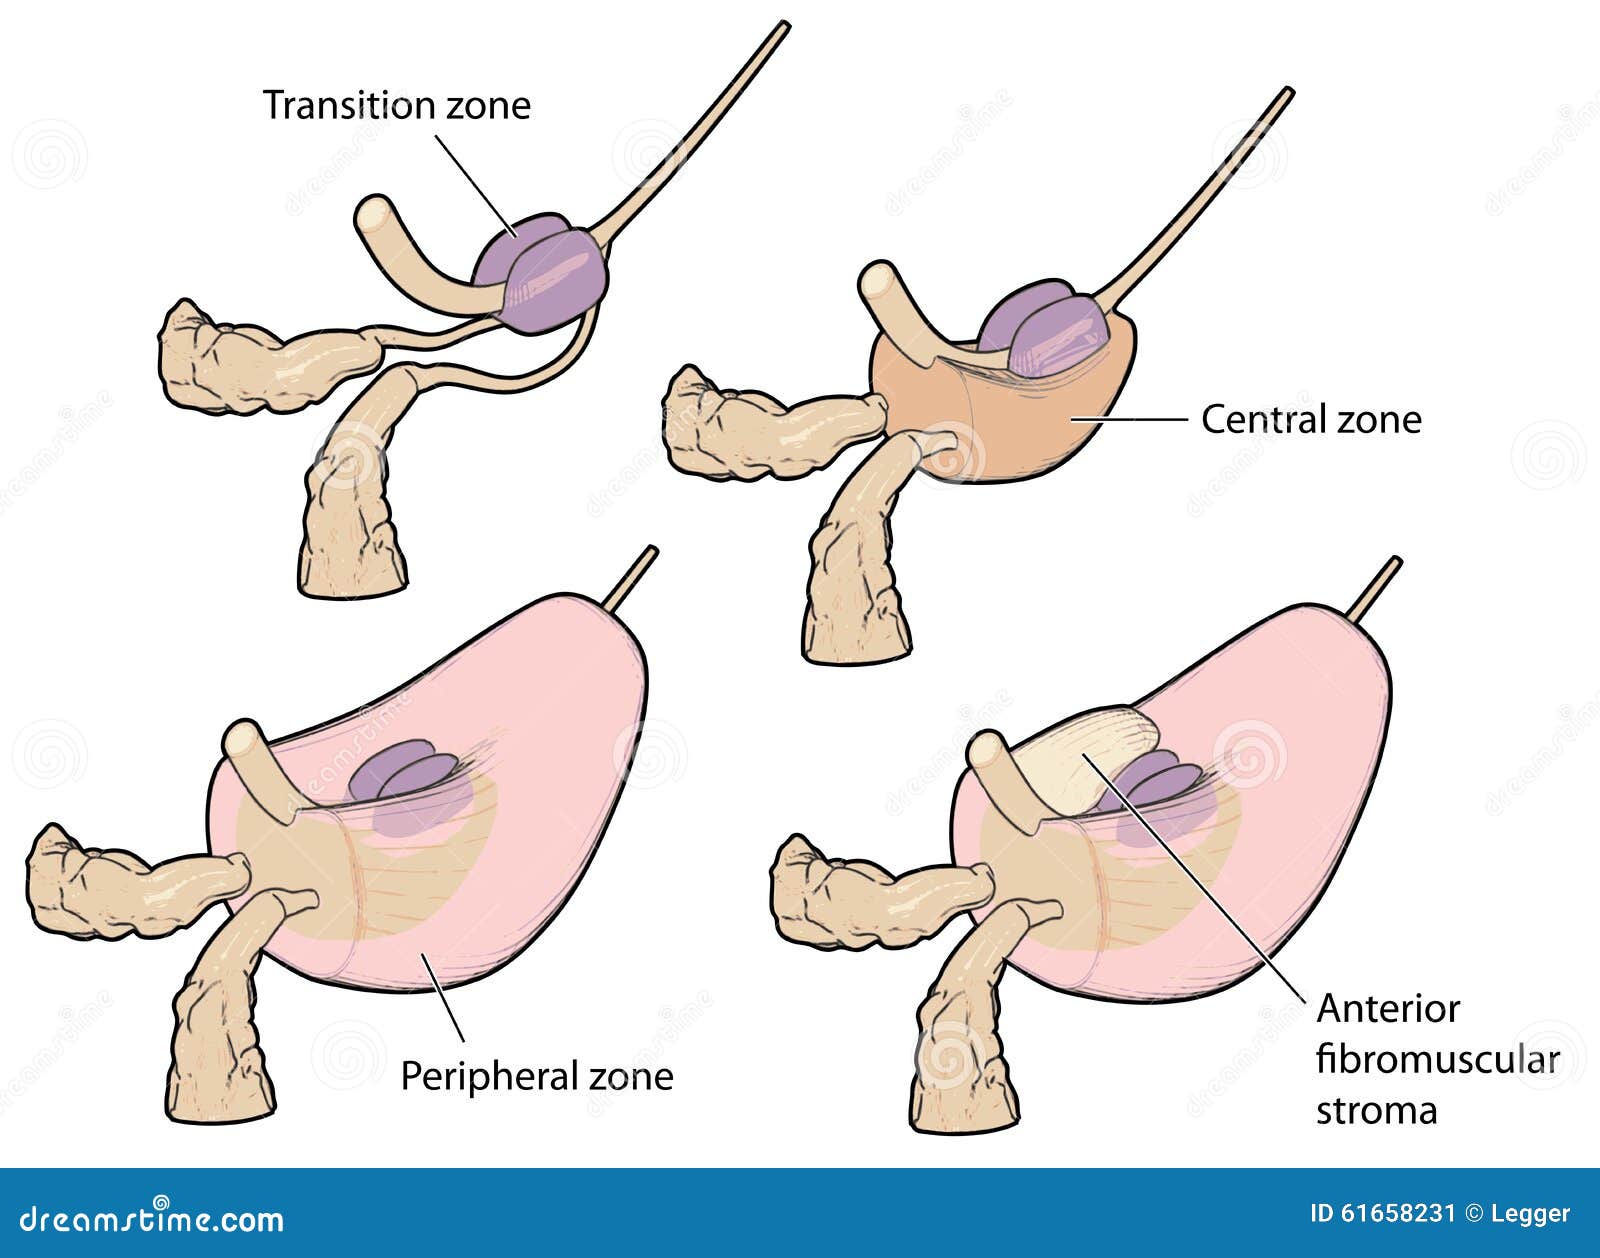 prostate gland anatomy 3d)